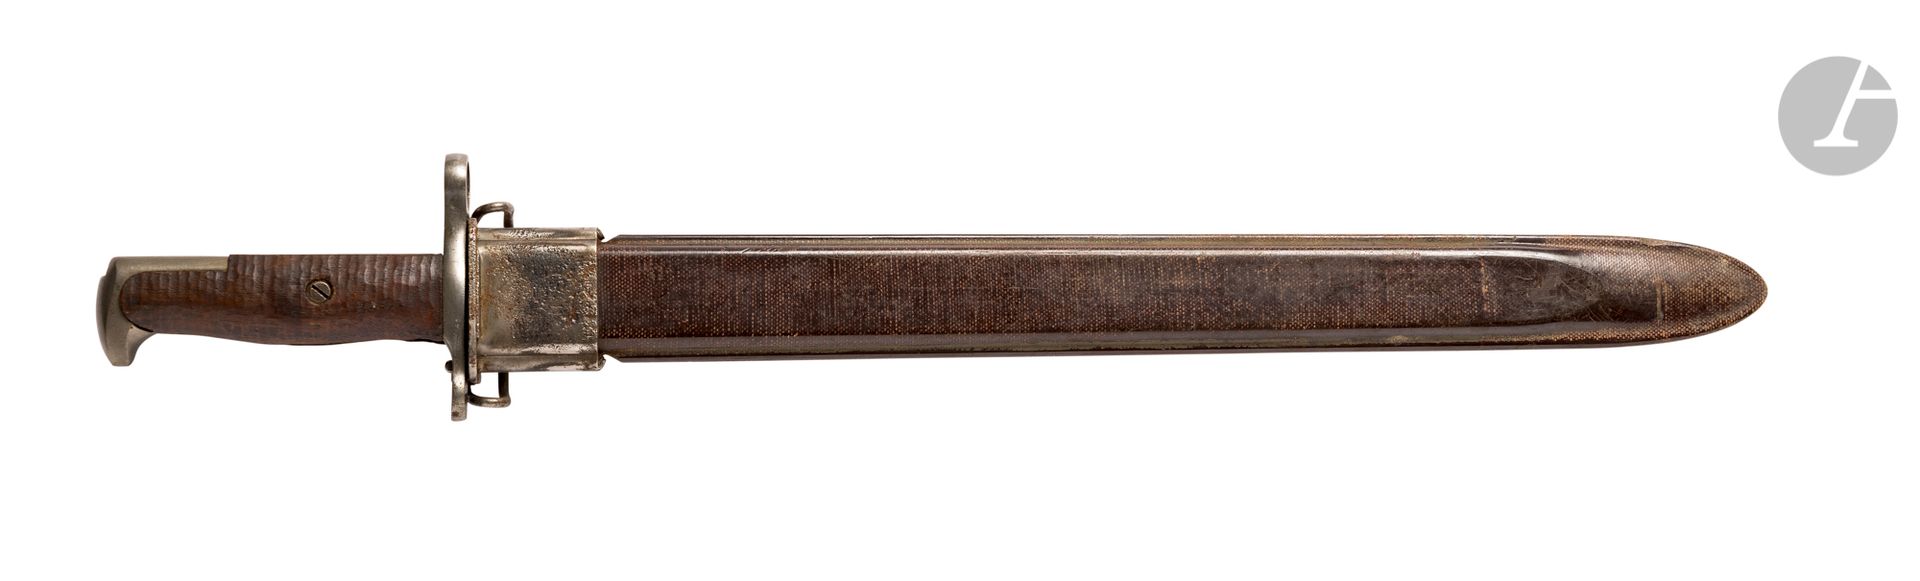 Null 
USAAmerikanisches
Bajonett
Modell 1905. 
Griff mit Holzplättchen und Stahl&hellip;